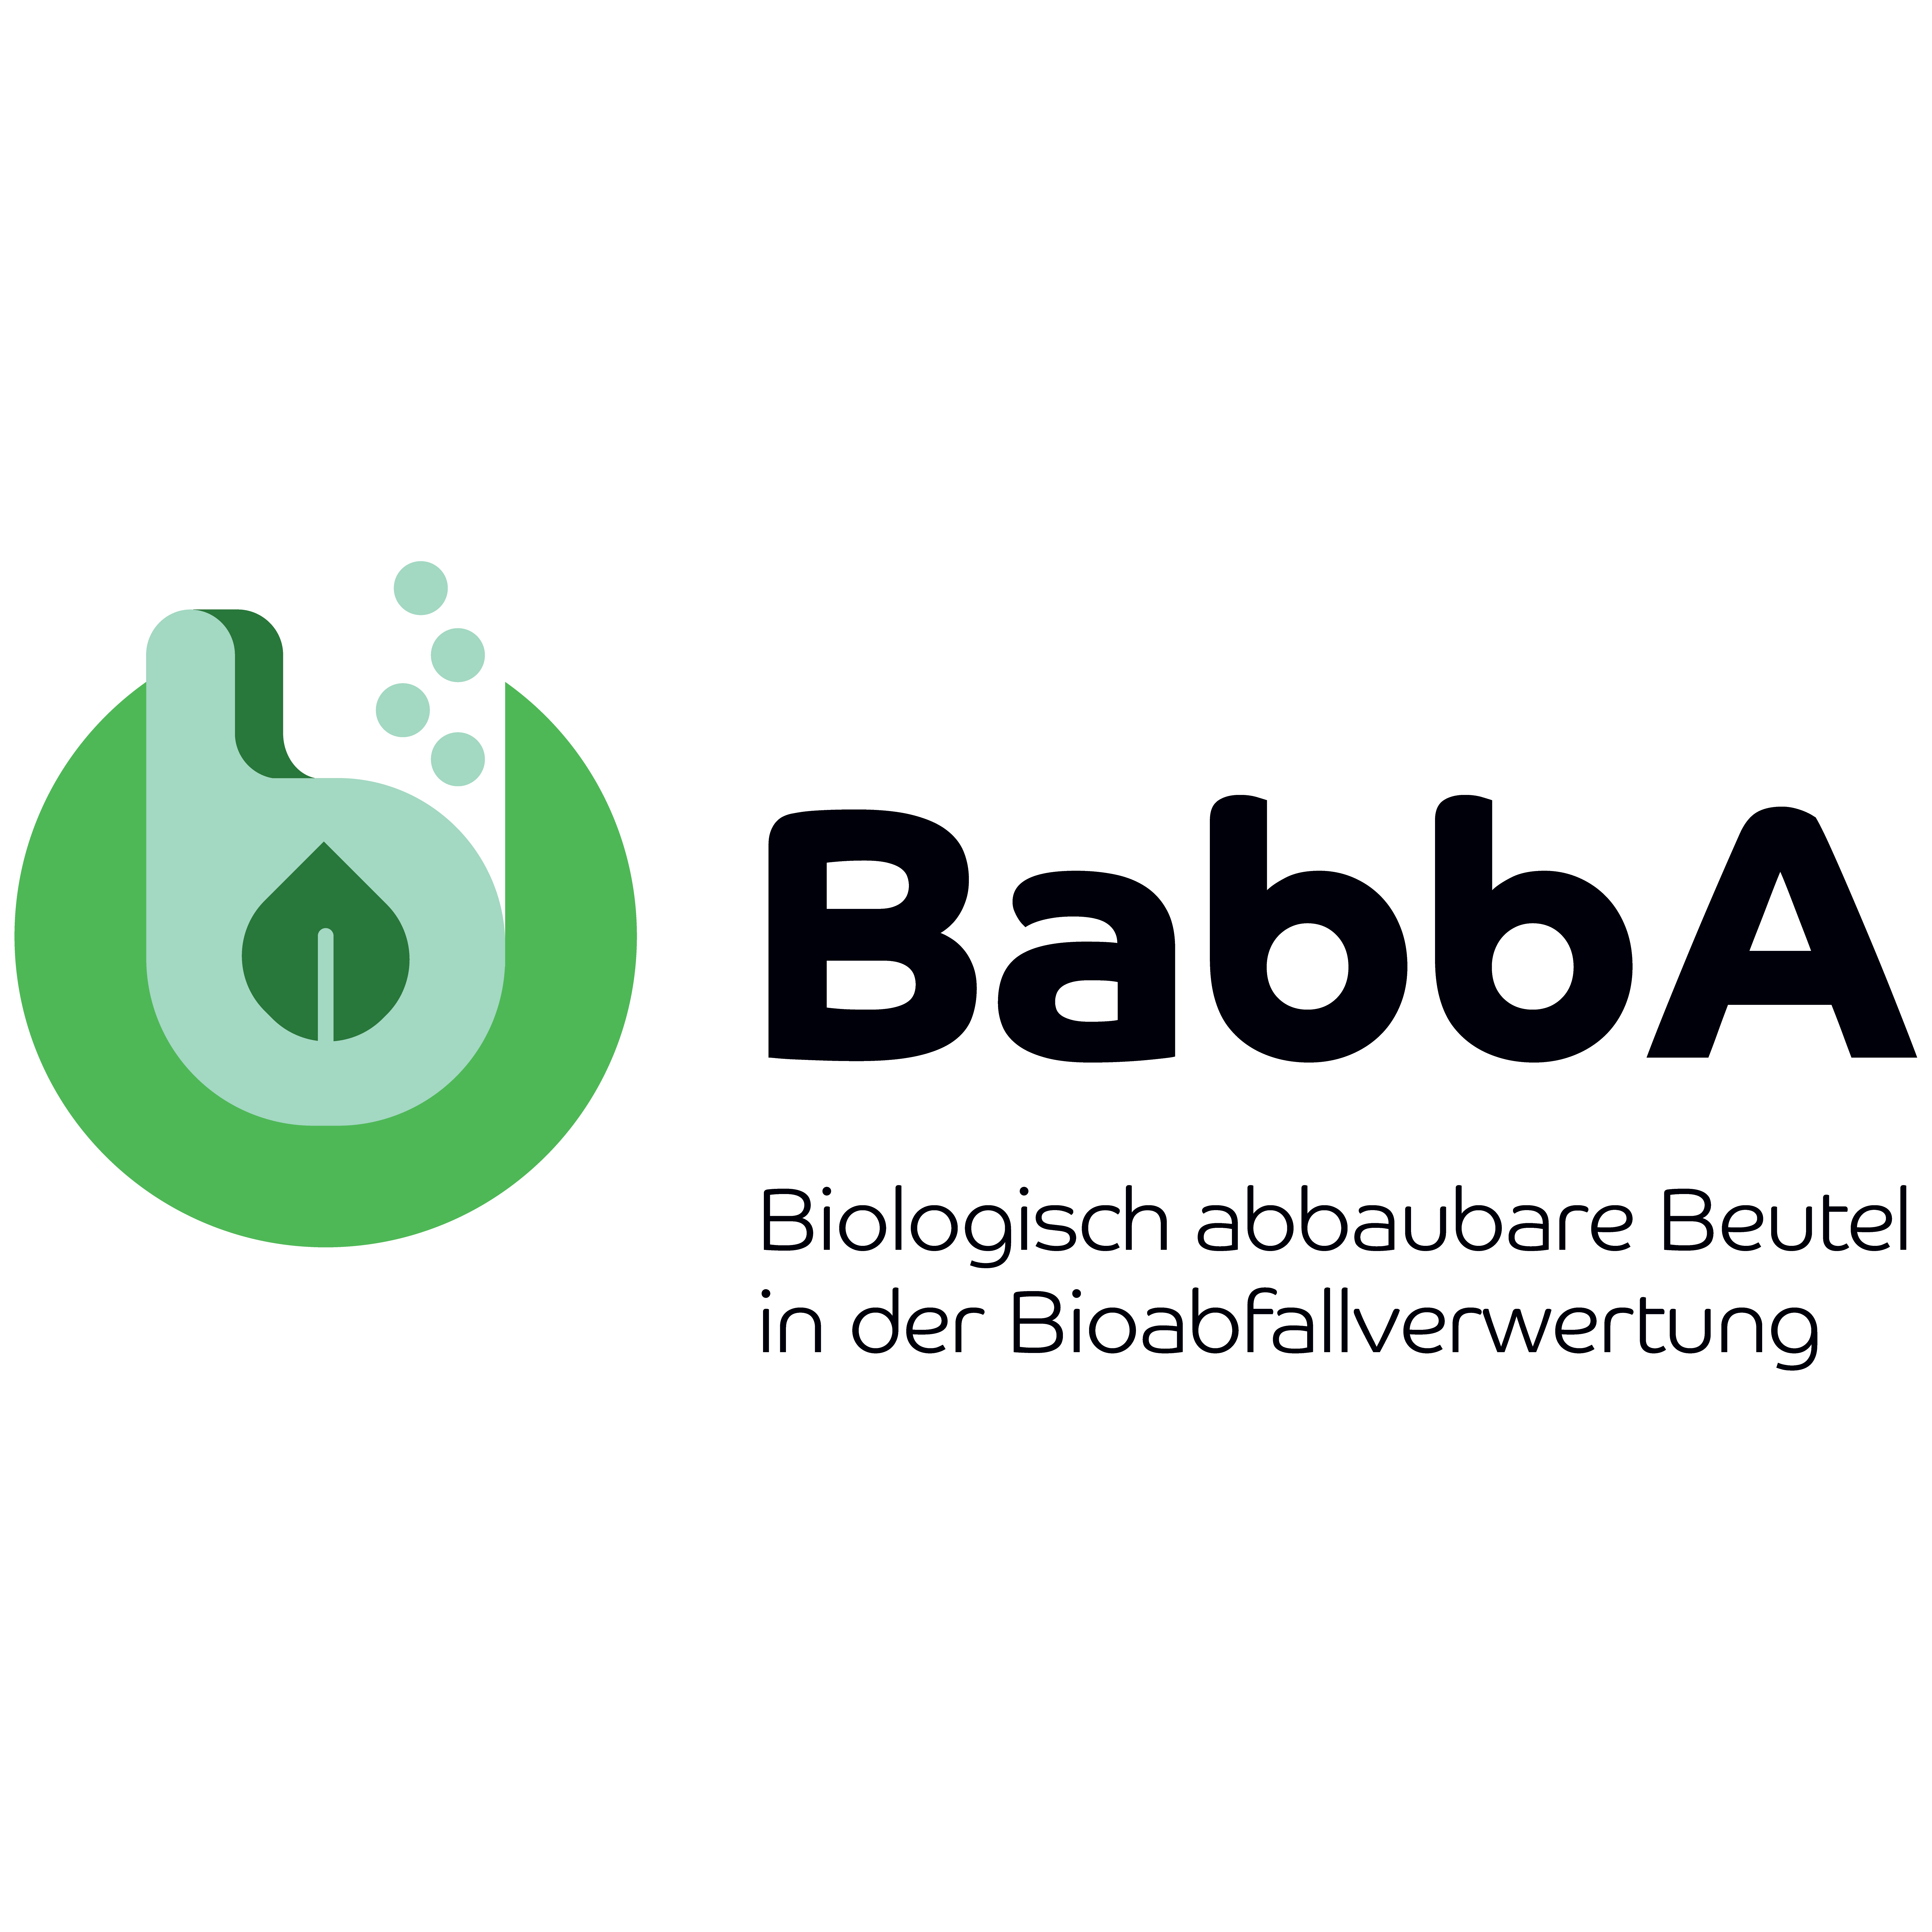 Babba logo